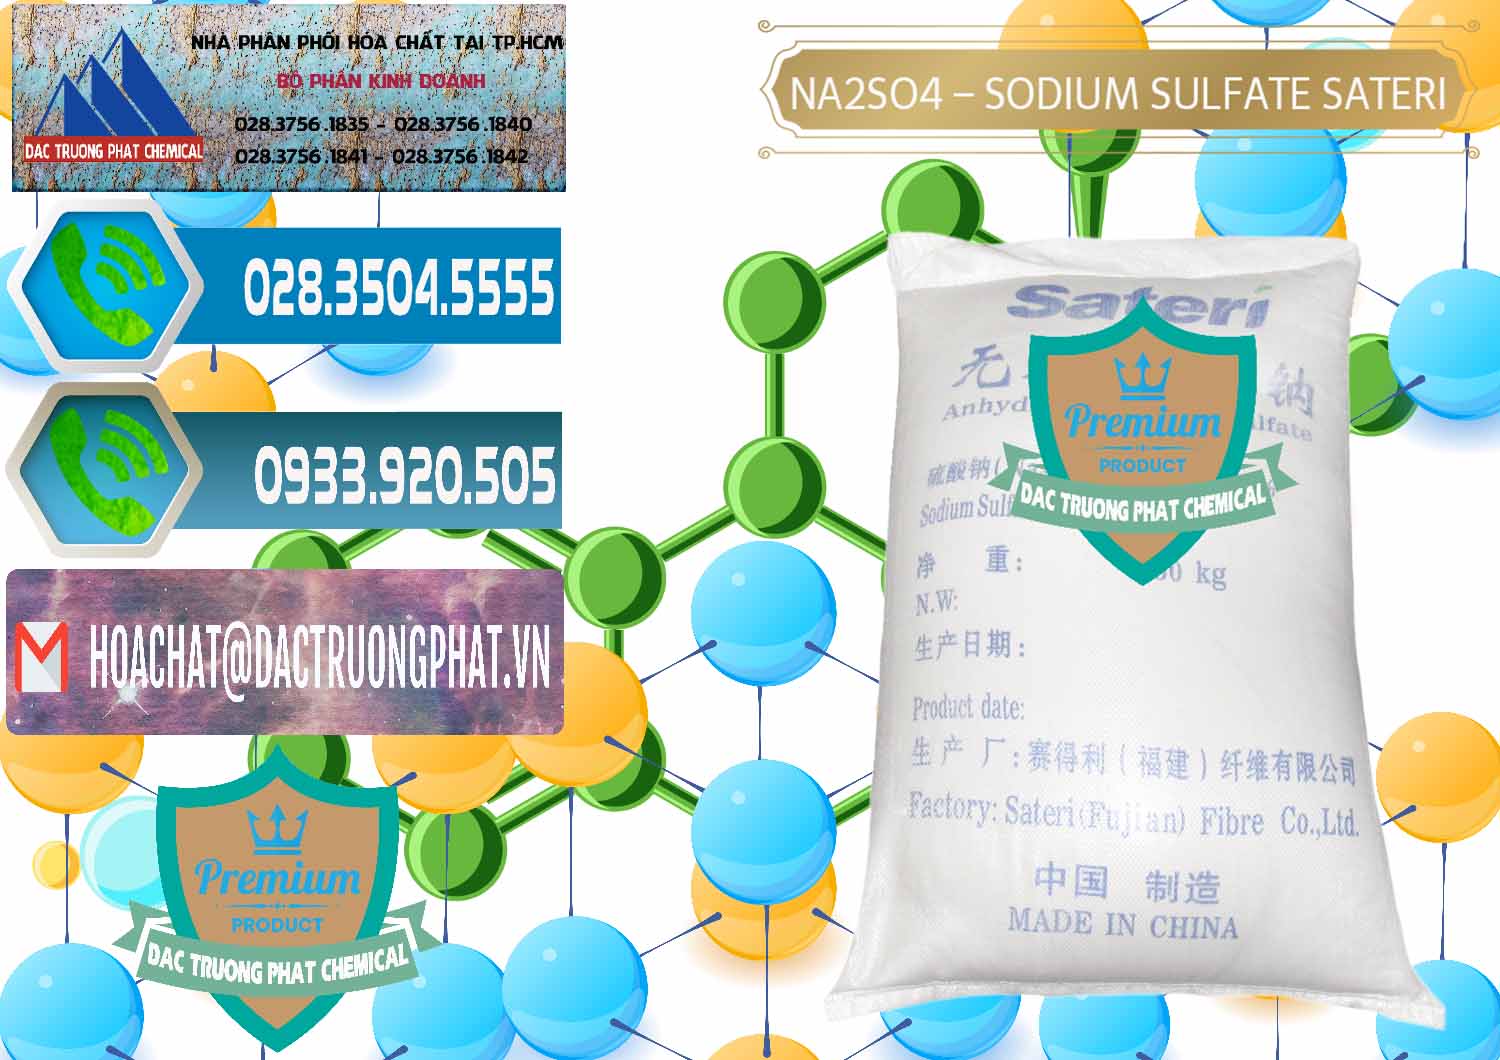 Cty bán & phân phối Sodium Sulphate - Muối Sunfat Na2SO4 Sateri Trung Quốc China - 0100 - Đơn vị chuyên kinh doanh & phân phối hóa chất tại TP.HCM - congtyhoachat.net